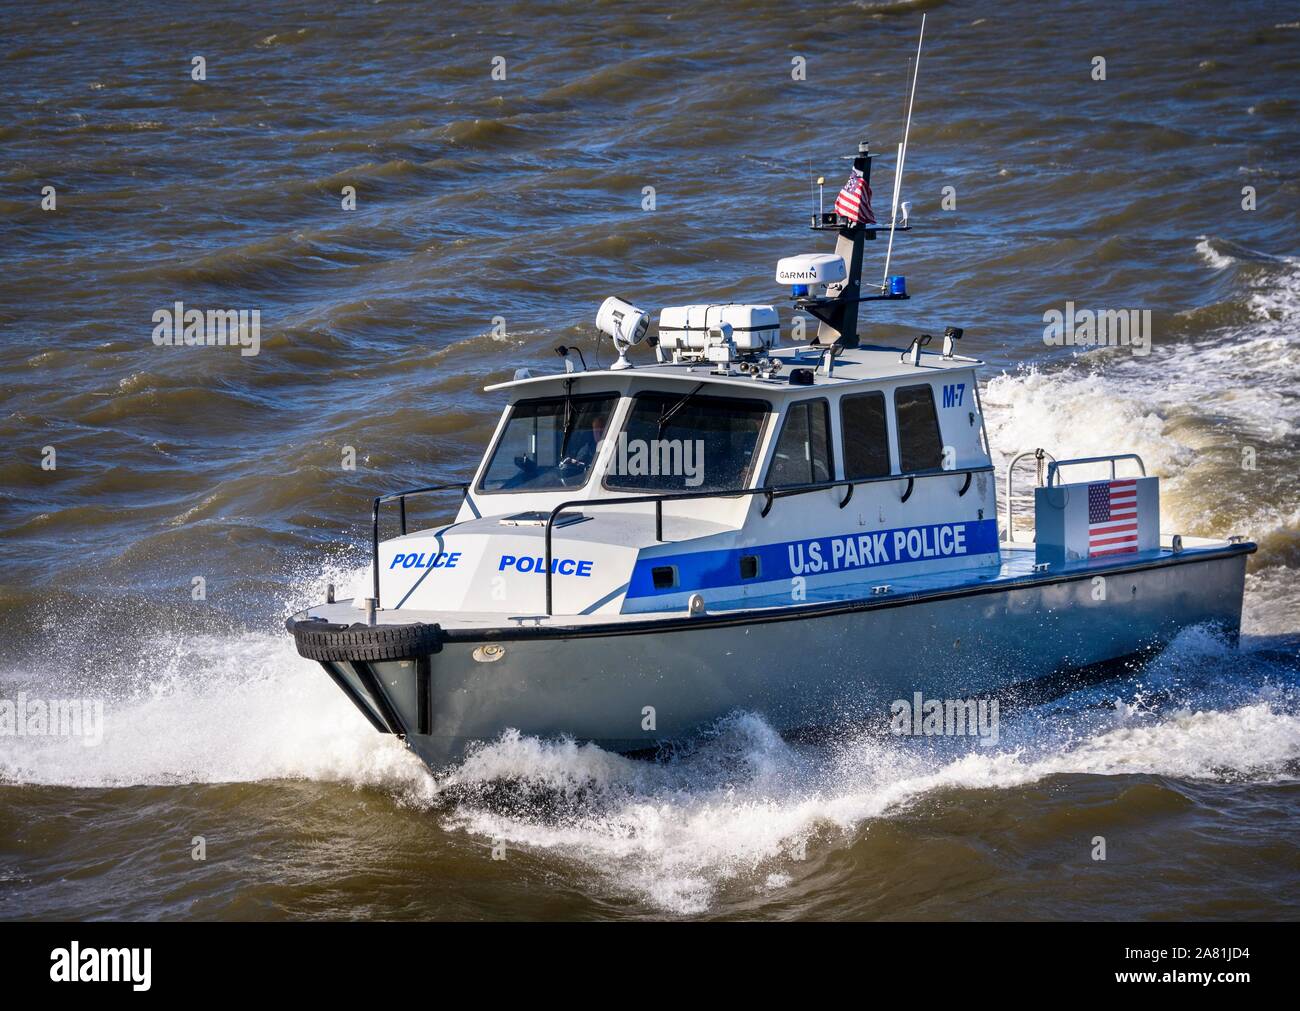 Police Boat on the Hudson River, Police, U.S. Park Police, New York City, New York, USA Stock Photo